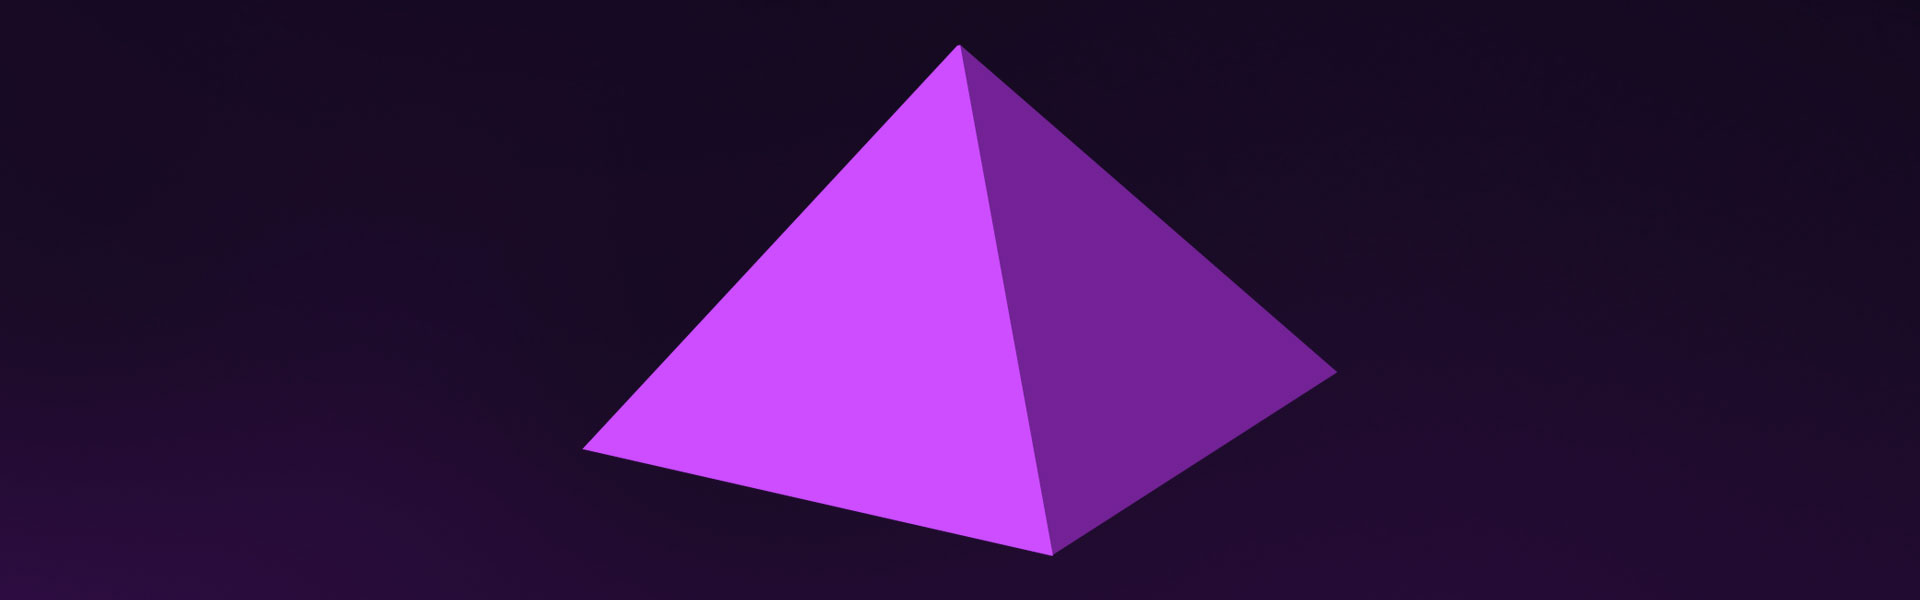 Model of a quadrangular pyramid.
